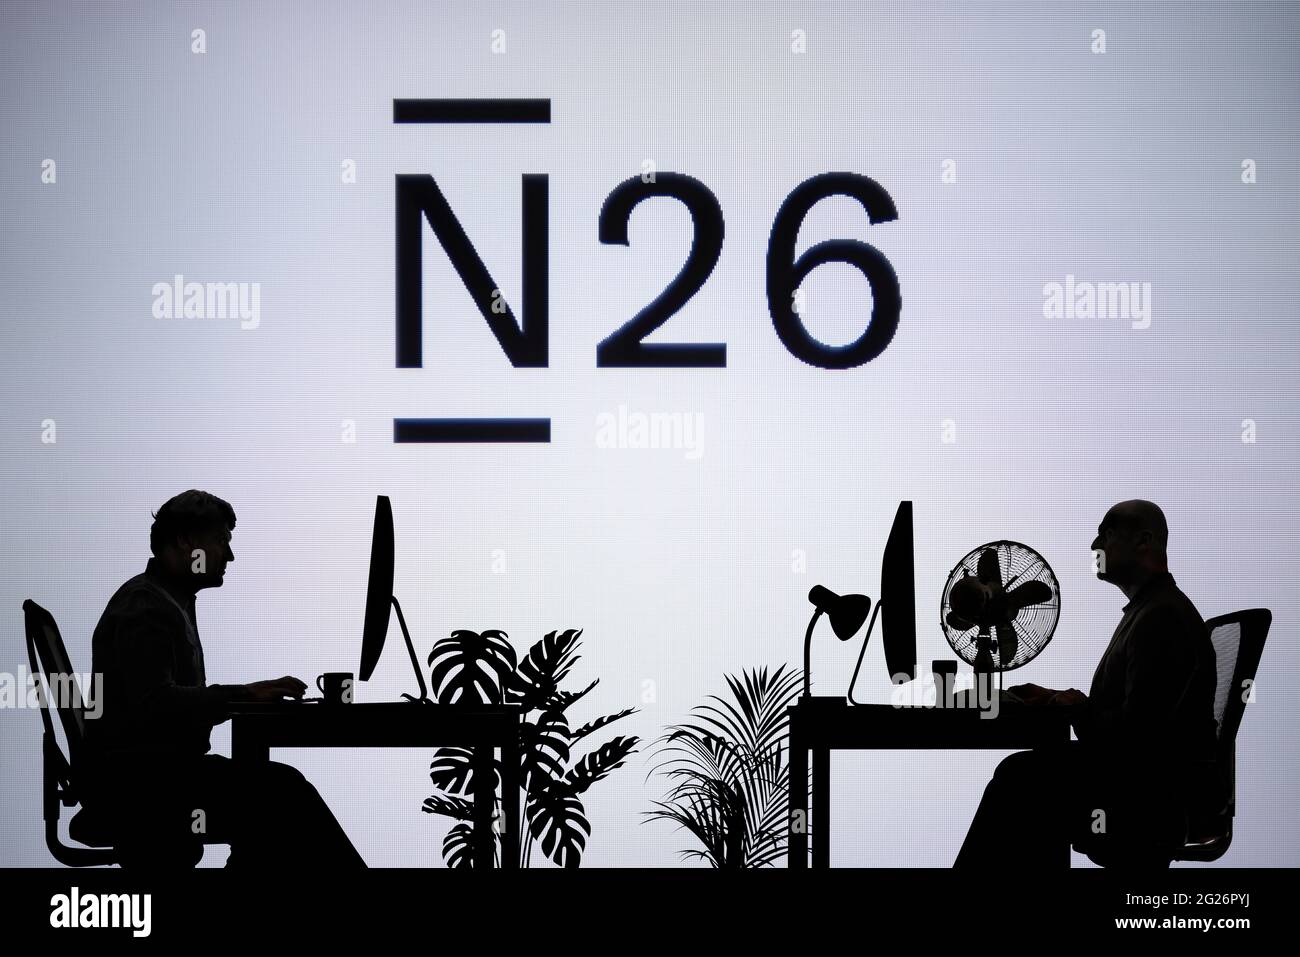 El logotipo del Banco N26 se ve en una pantalla LED en segundo plano, mientras que dos personas con siluetas trabajan en un entorno de oficina (sólo para uso editorial) Foto de stock